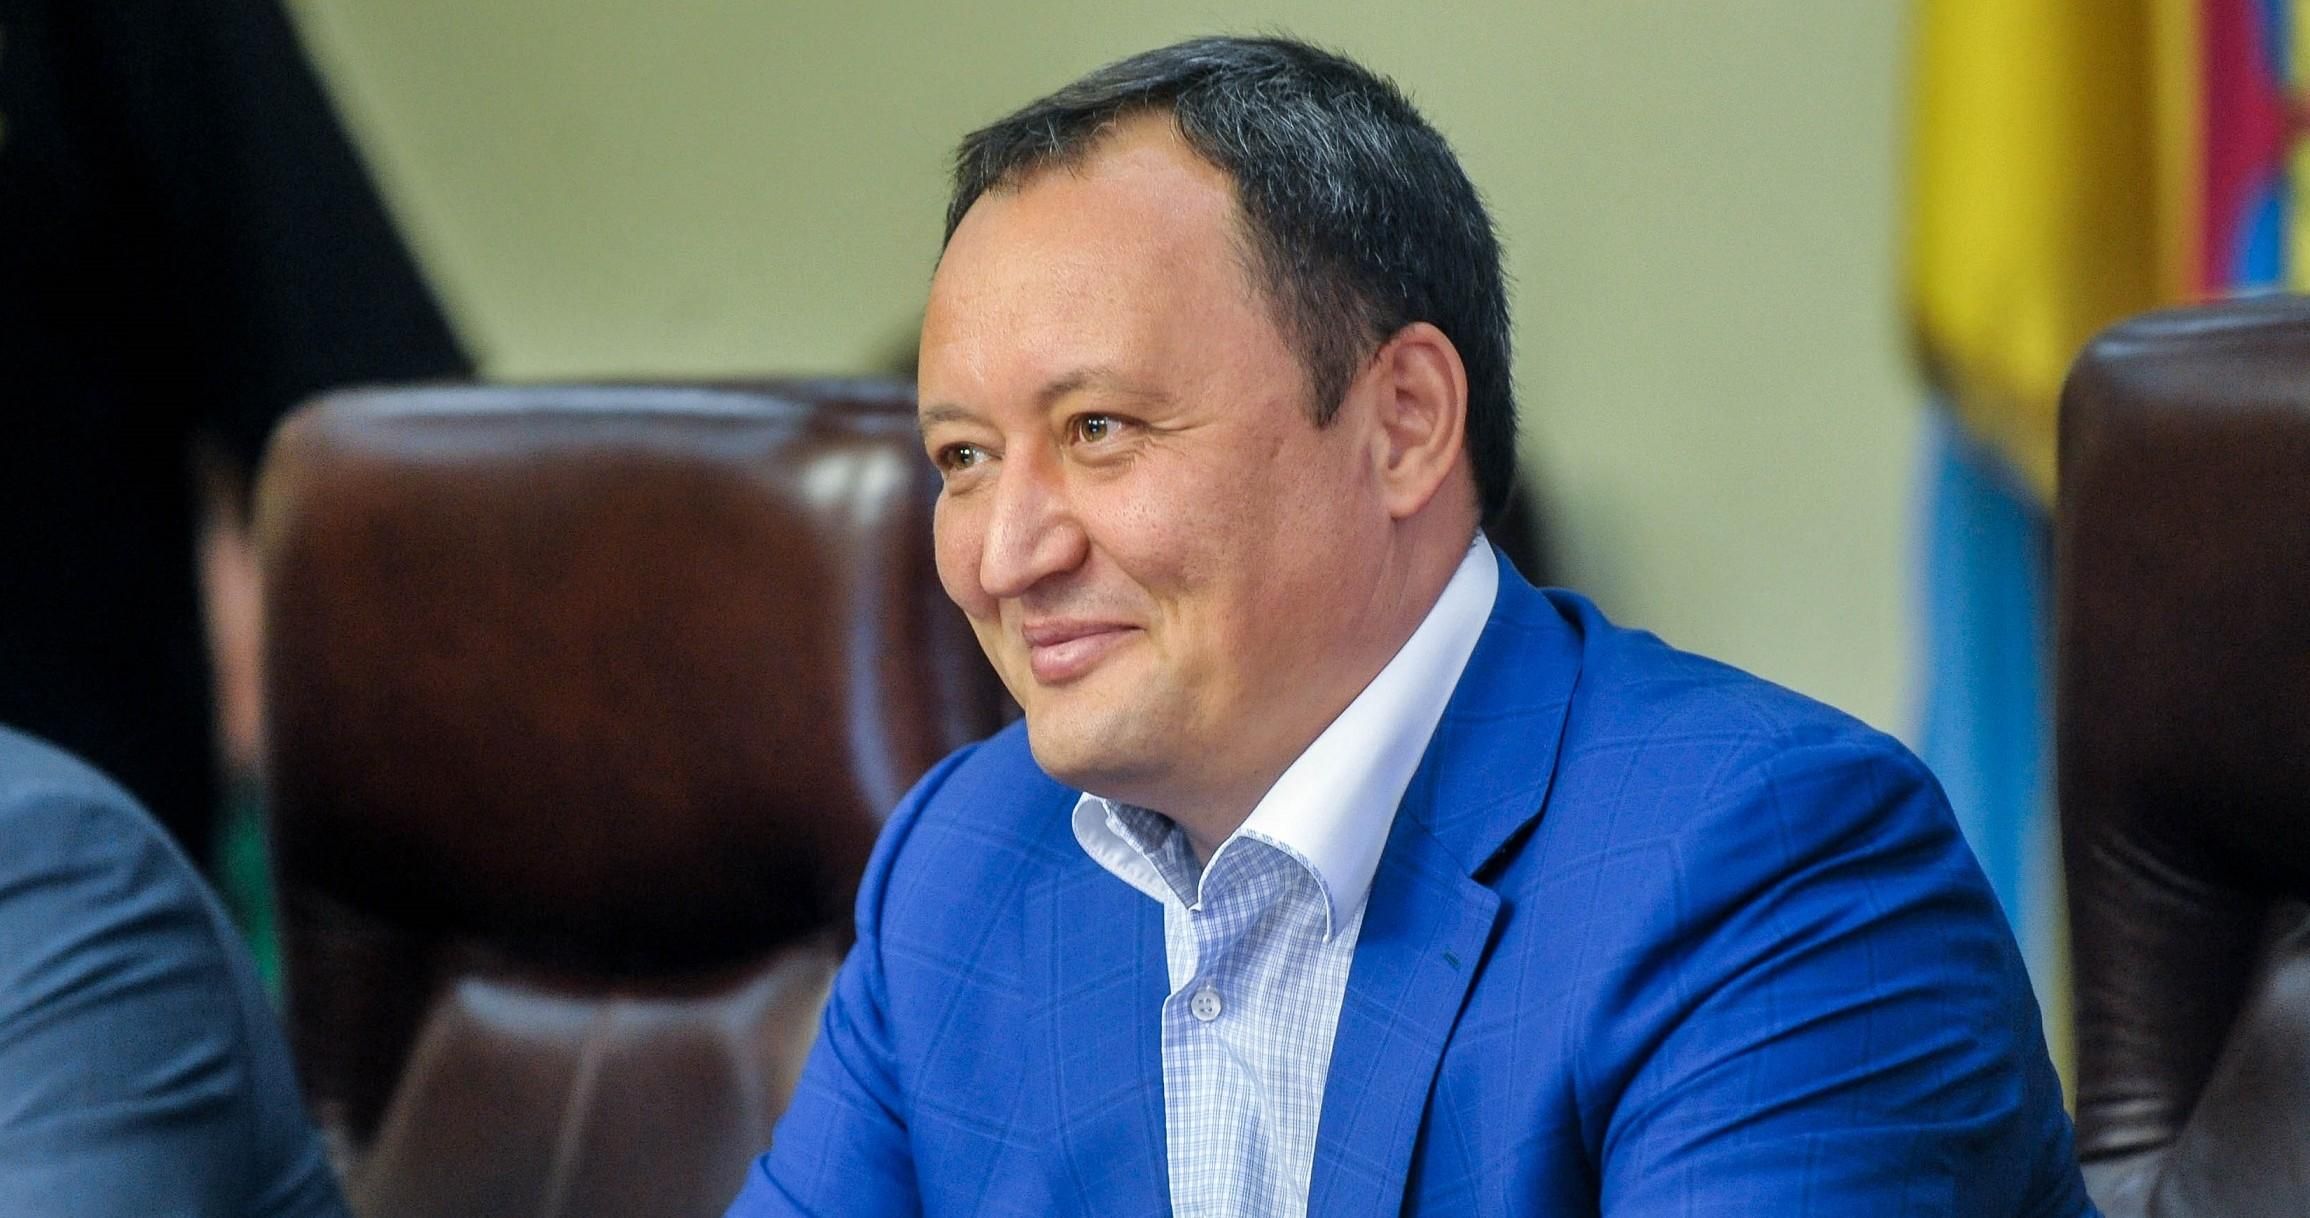 За дело экс-главы Запорожской ОГА Брыля возьмется Антикоррупционный суд: в чем его подозревают